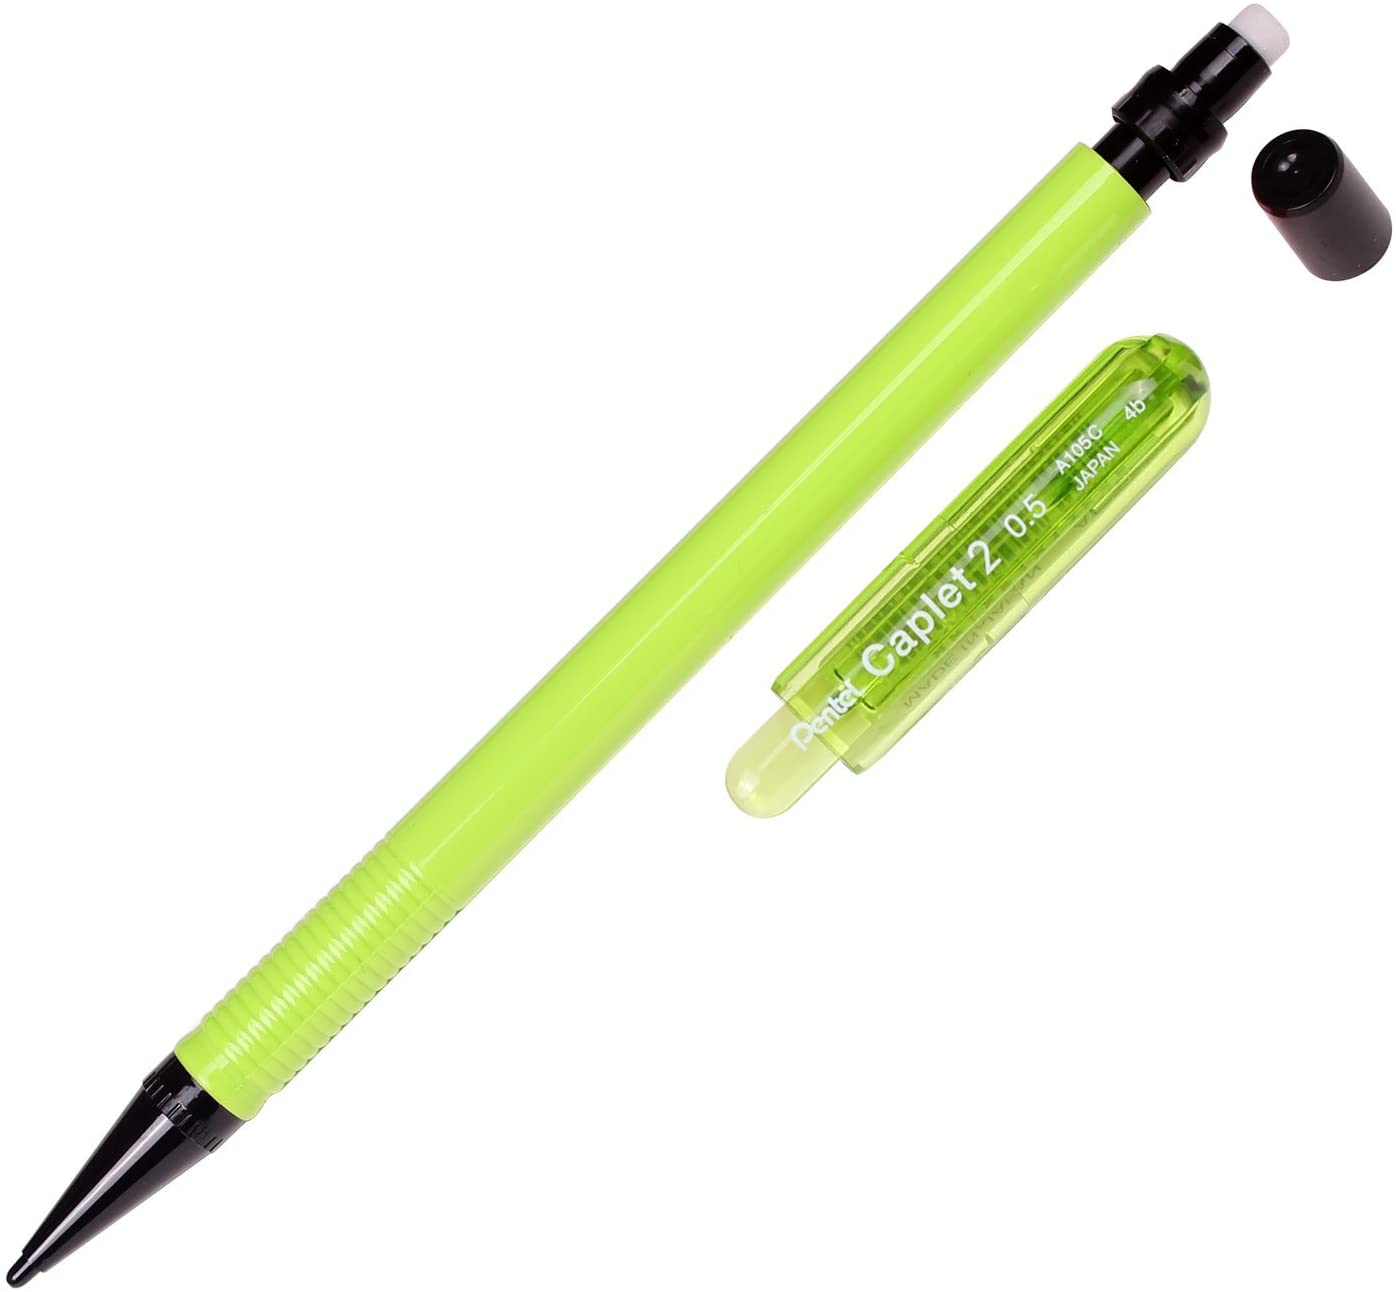 Bút Chì Kim Pentel Caplet Màu Neon A105C Ngòi 0.5mm | Thiết Kế Đẹp Mắt | 4 Màu Vỏ